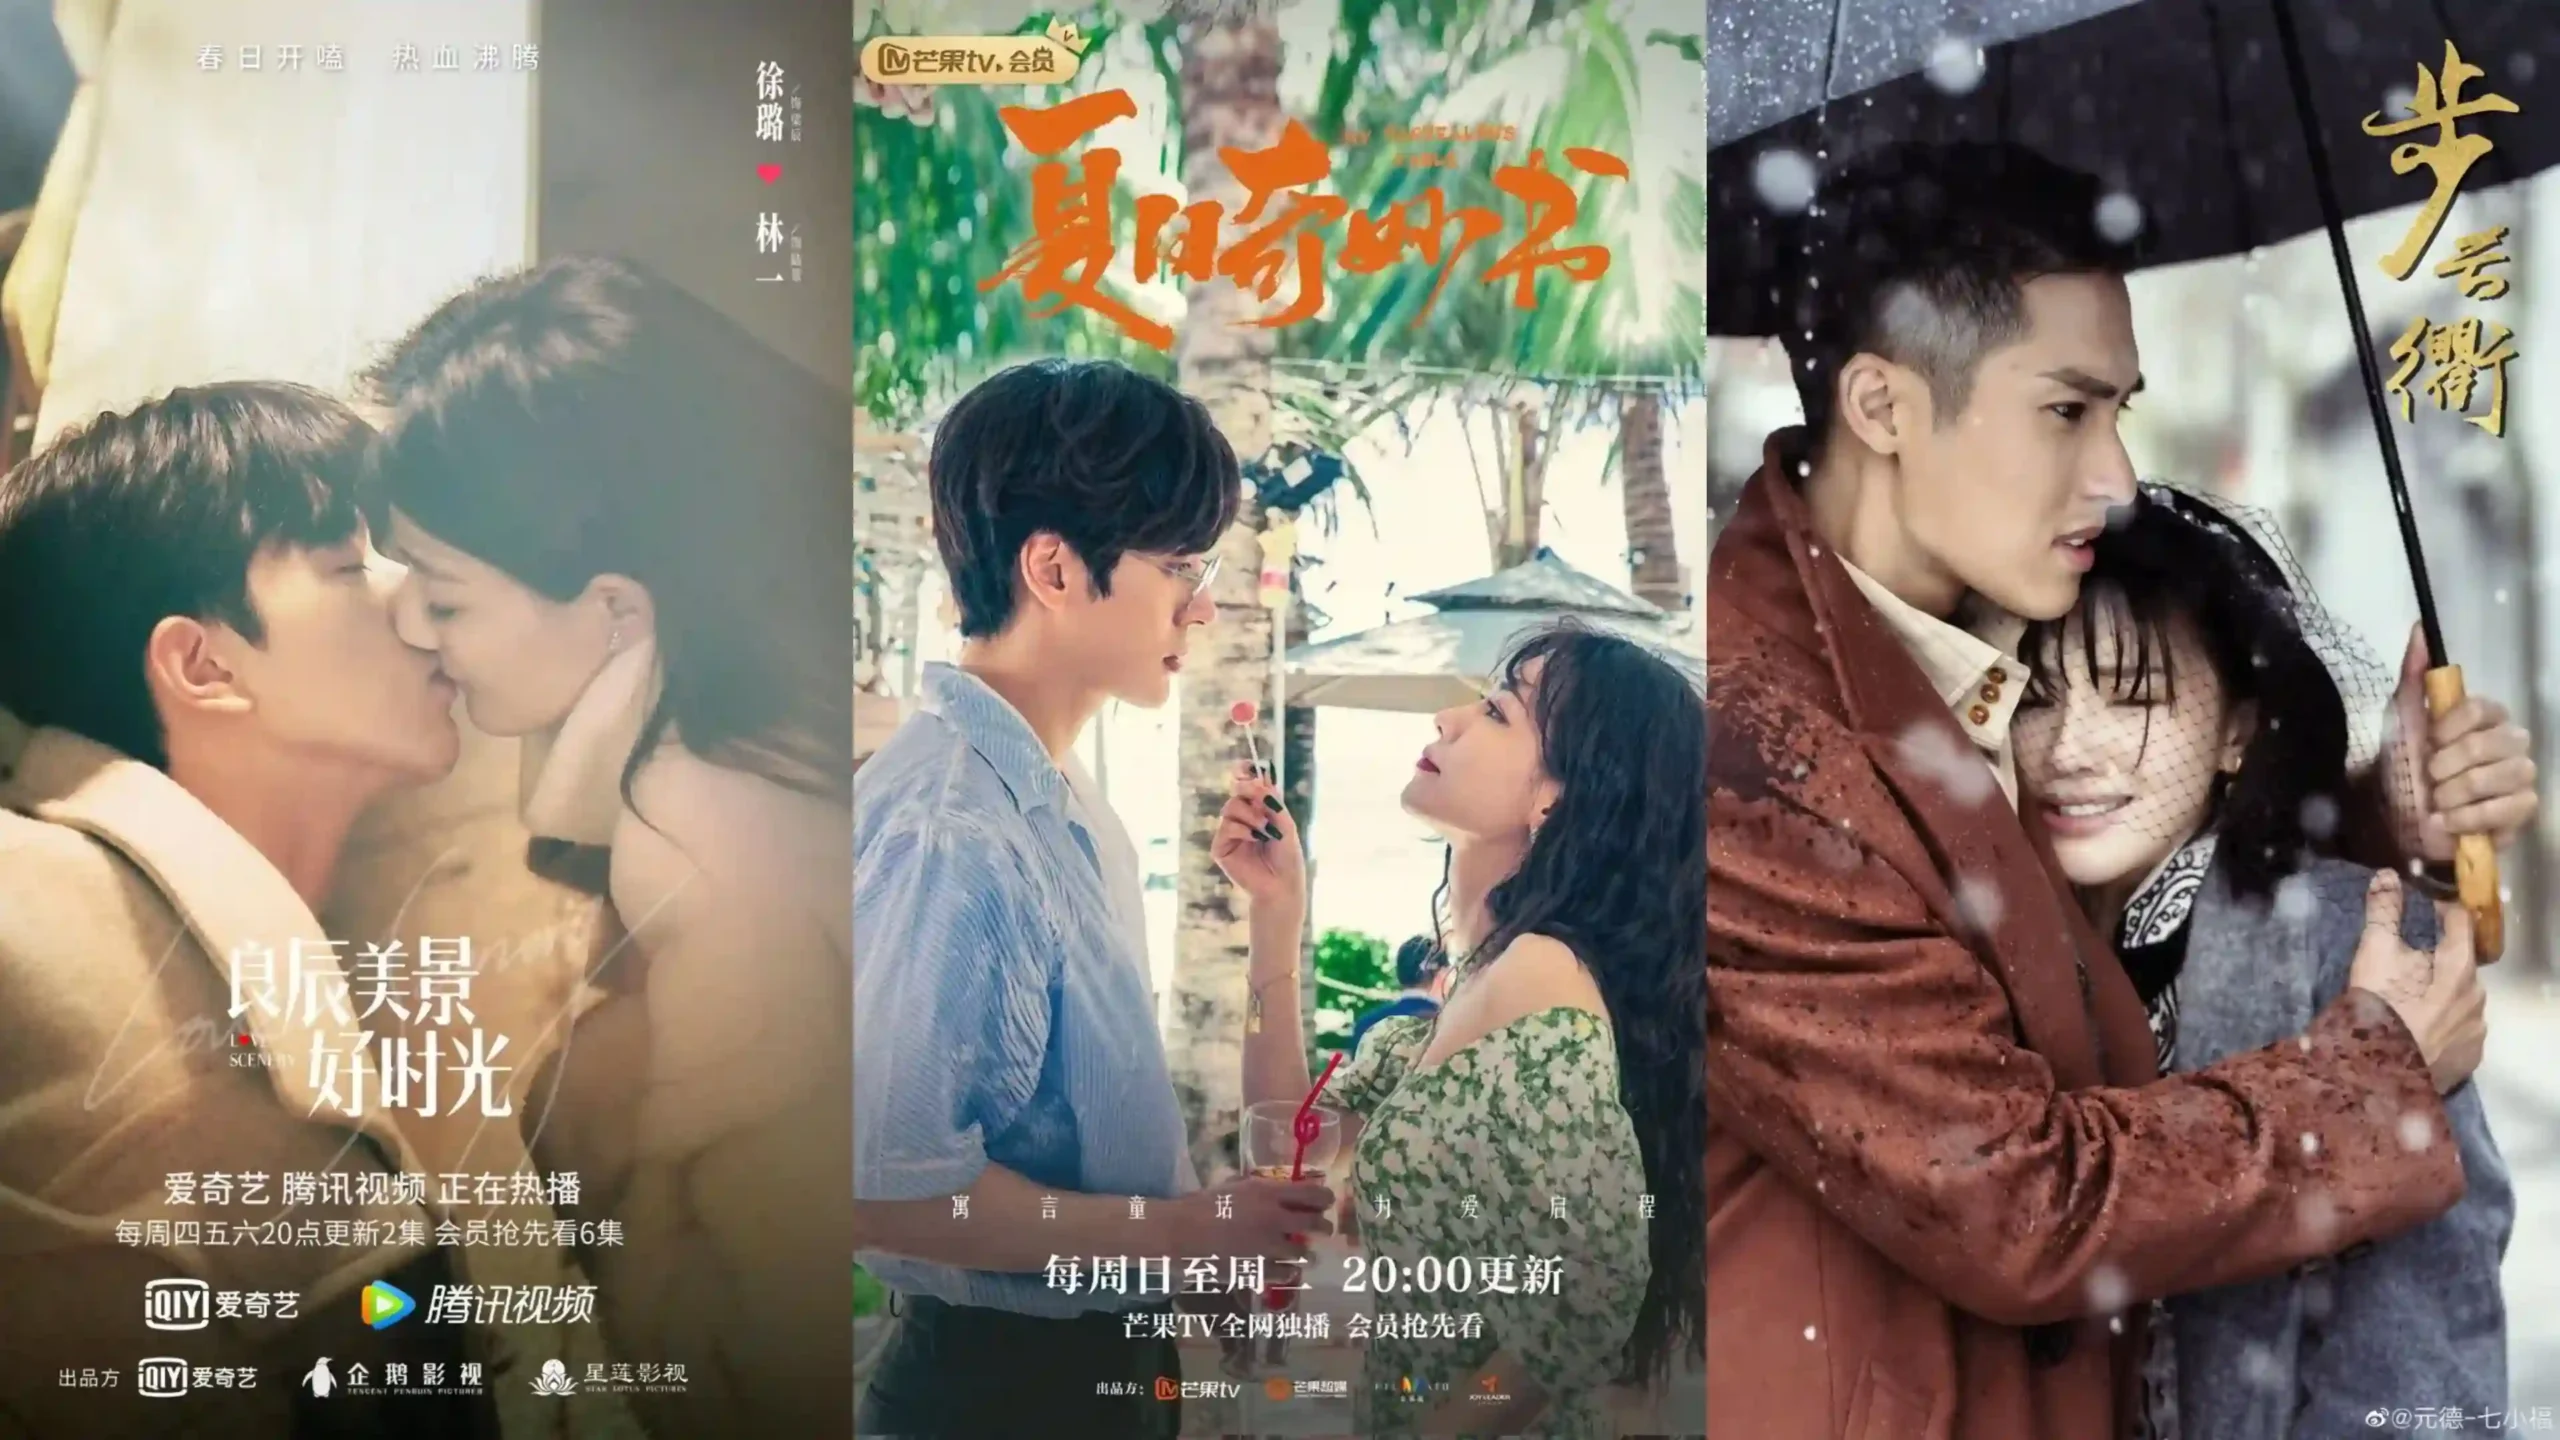 Chinese drama on YouTube with English subtitles scaled